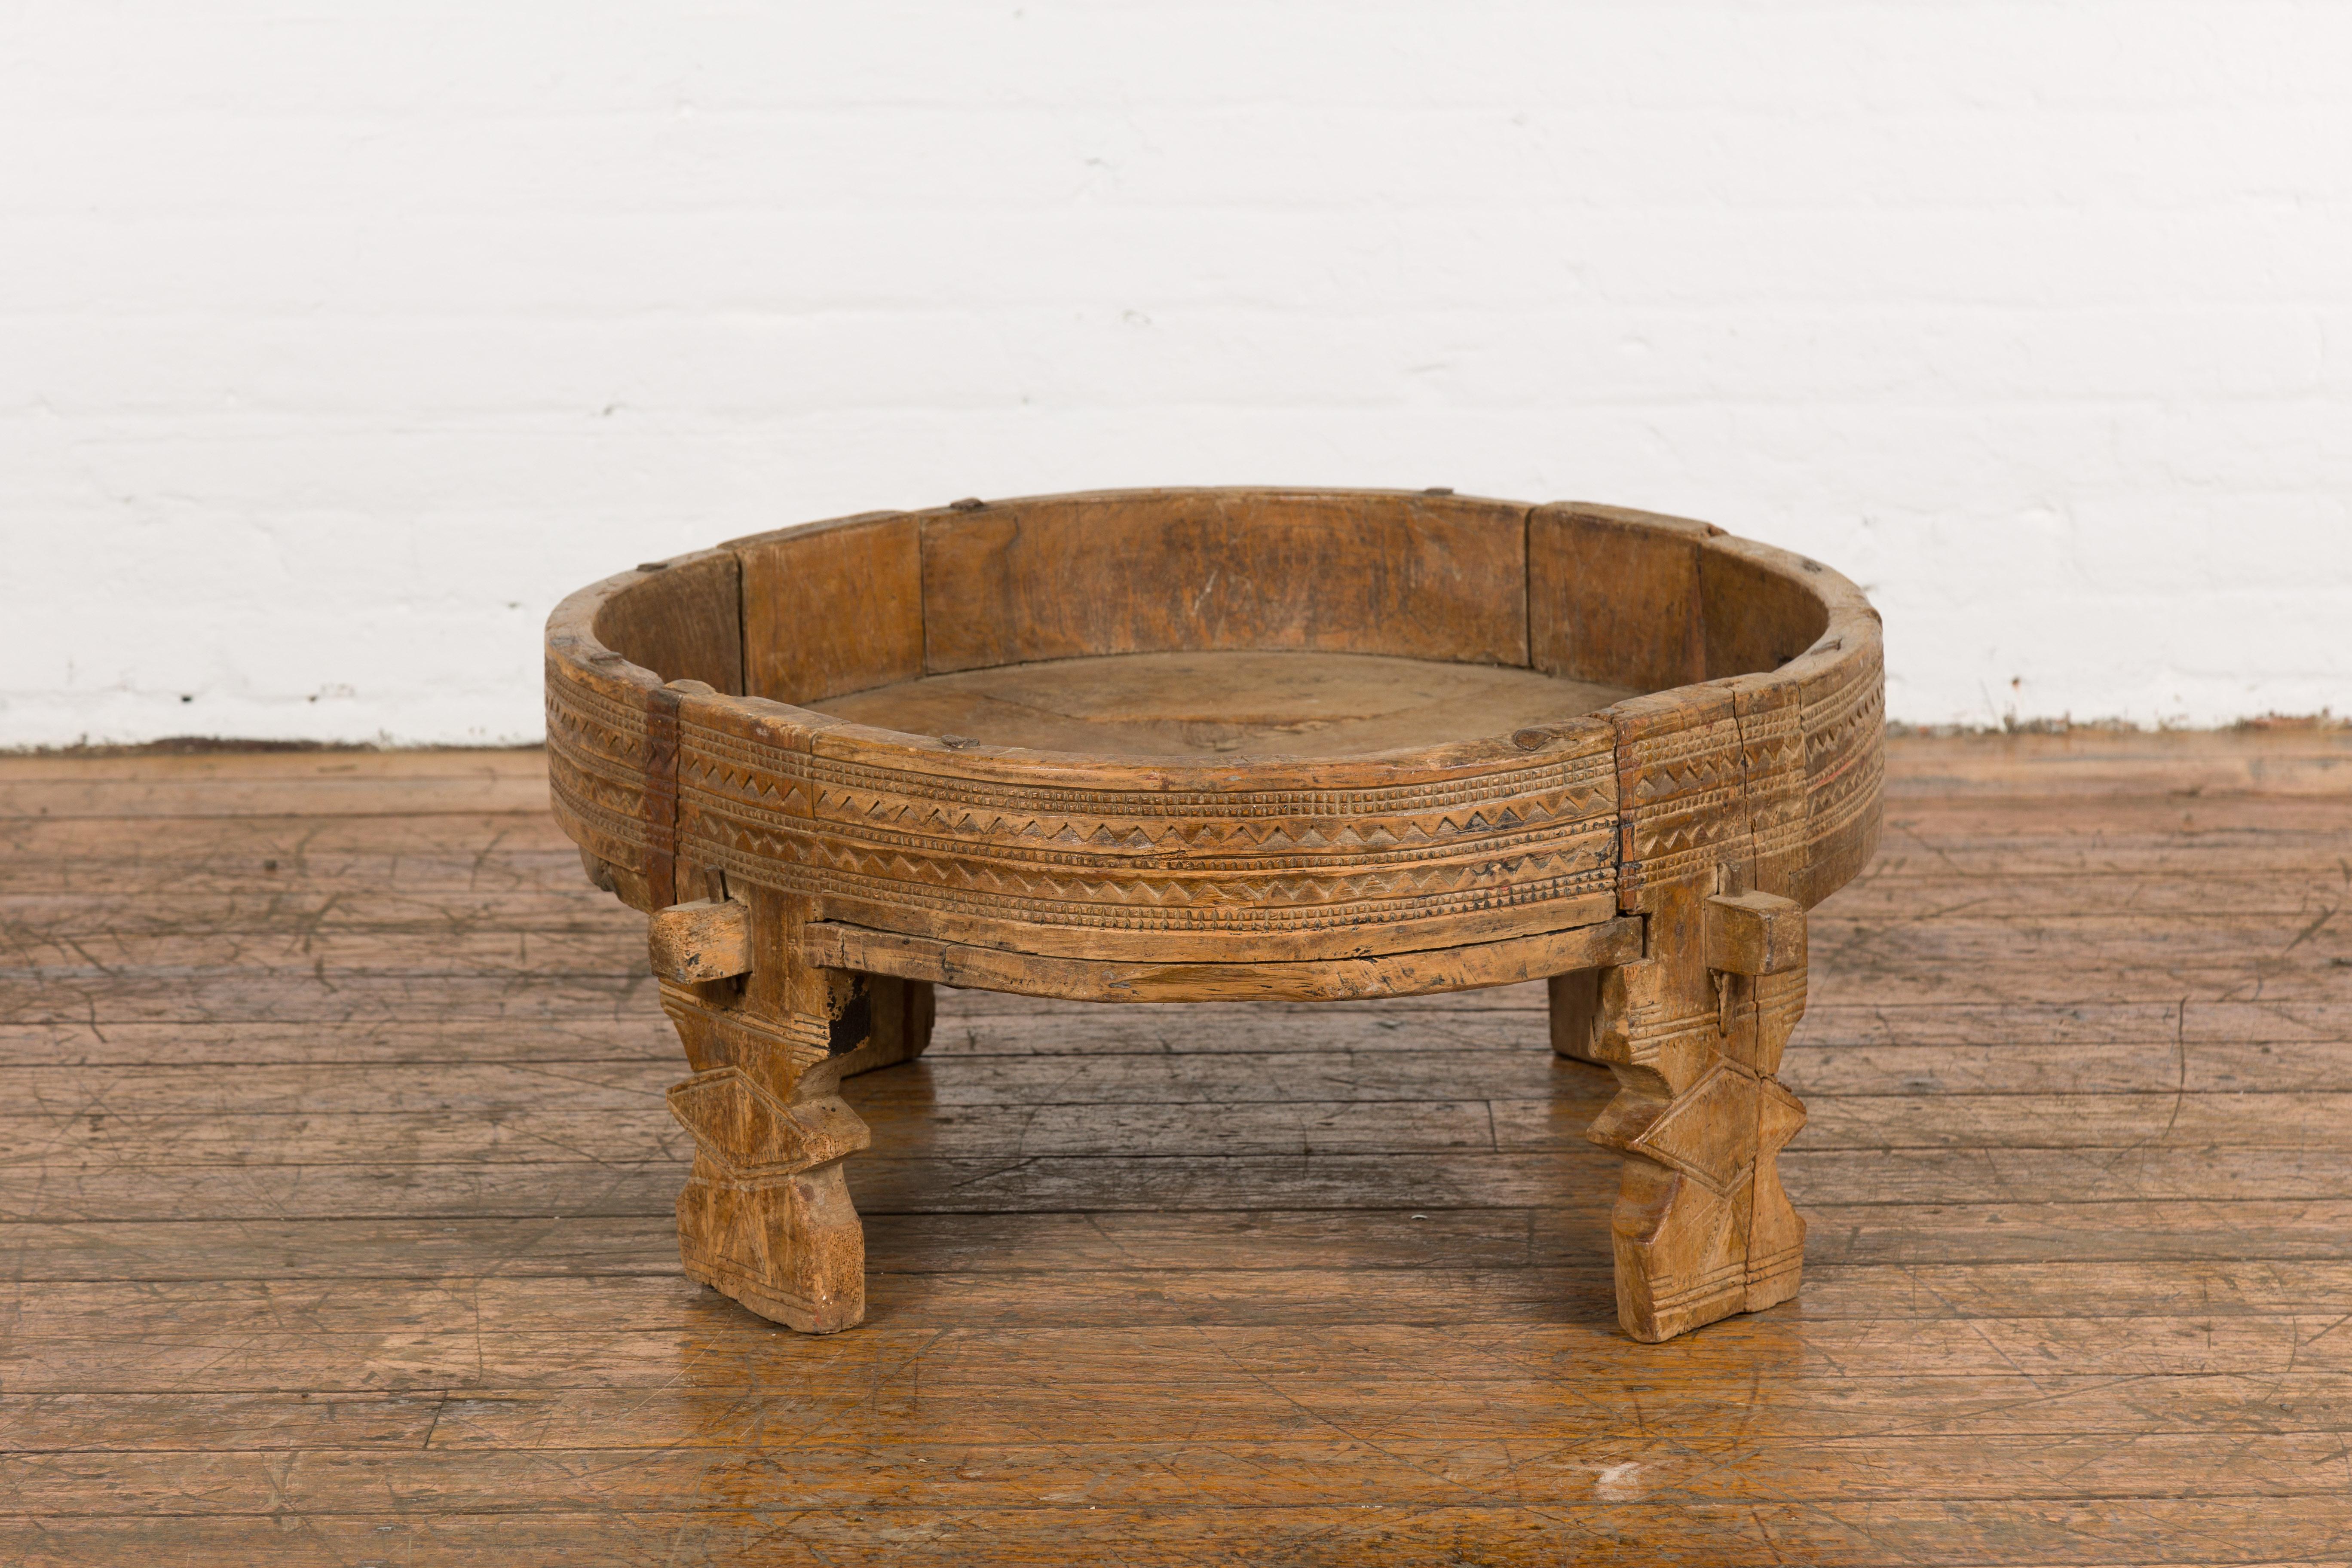 Table à moudre Chakki en bois de teck rustique tribal indien des années 1920, avec des motifs géométriques sculptés à la main, un centre ouvert, des pieds sculptés et une patine d'usage. Découvrez l'allure enchanteresse de cette table à moudre